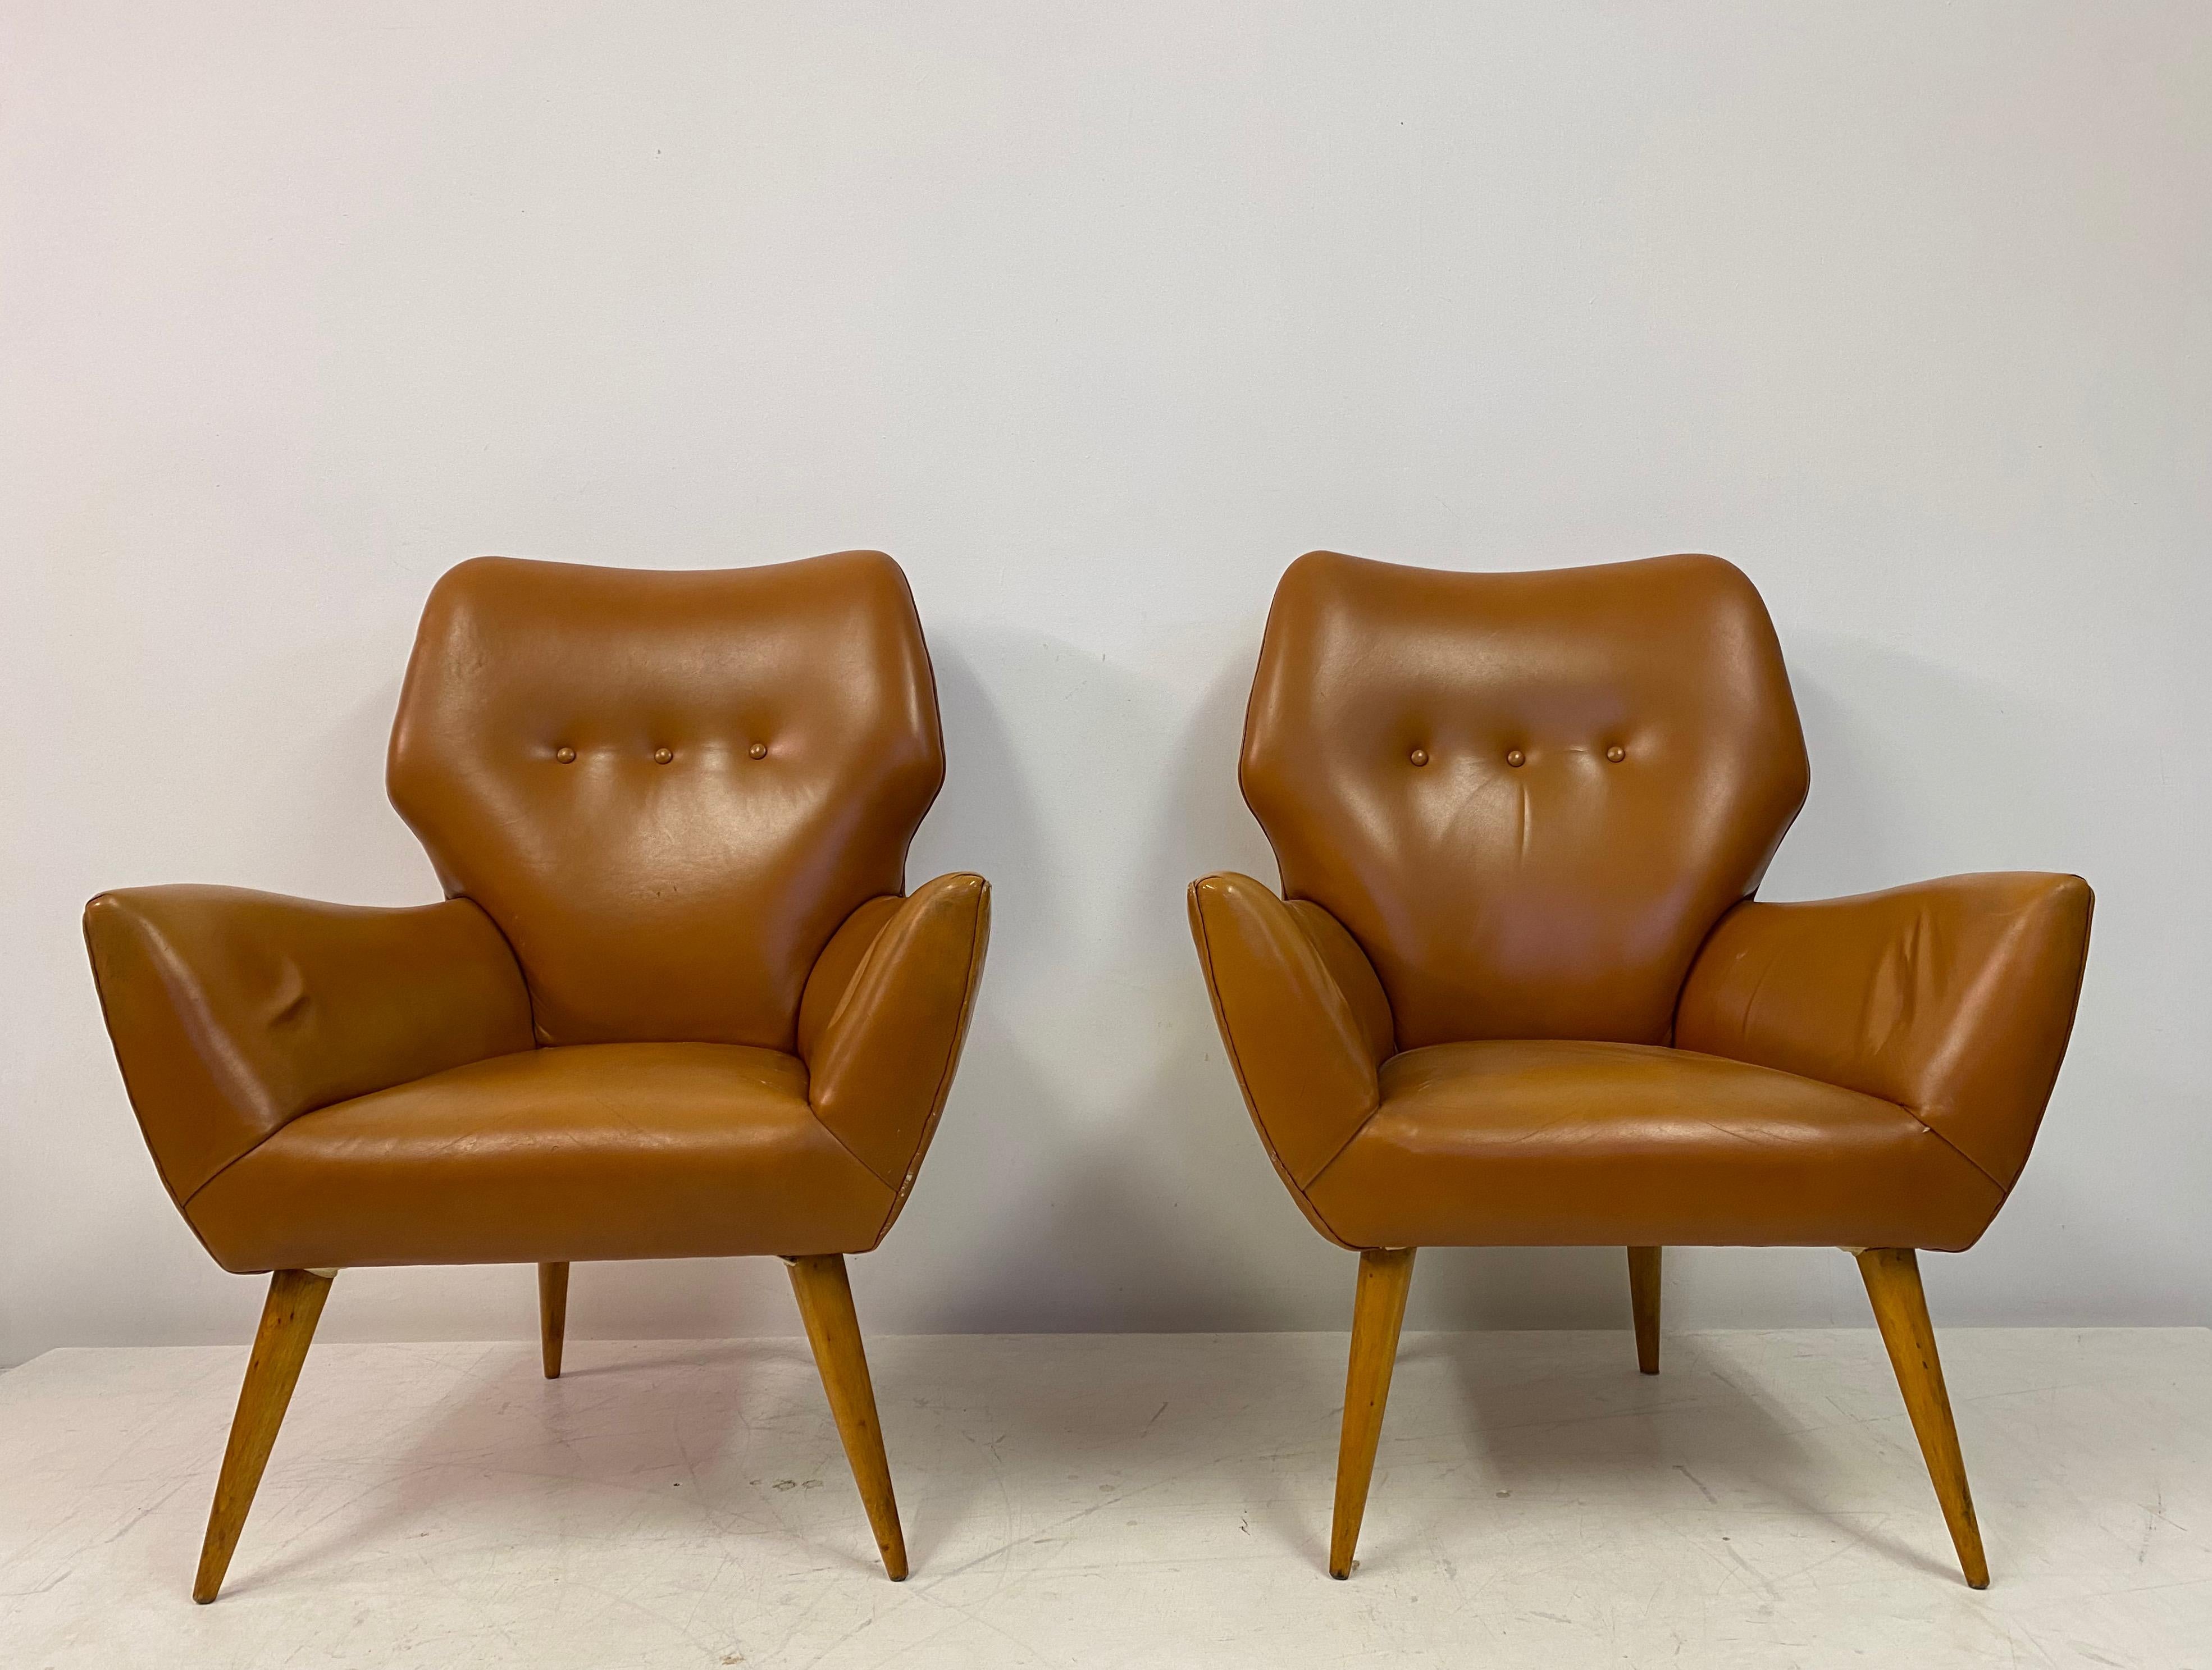 Paire de fauteuils

Rembourrage en cuir

Pieds en hêtre tourné

Hauteur du siège 38cm

Italie années 1950